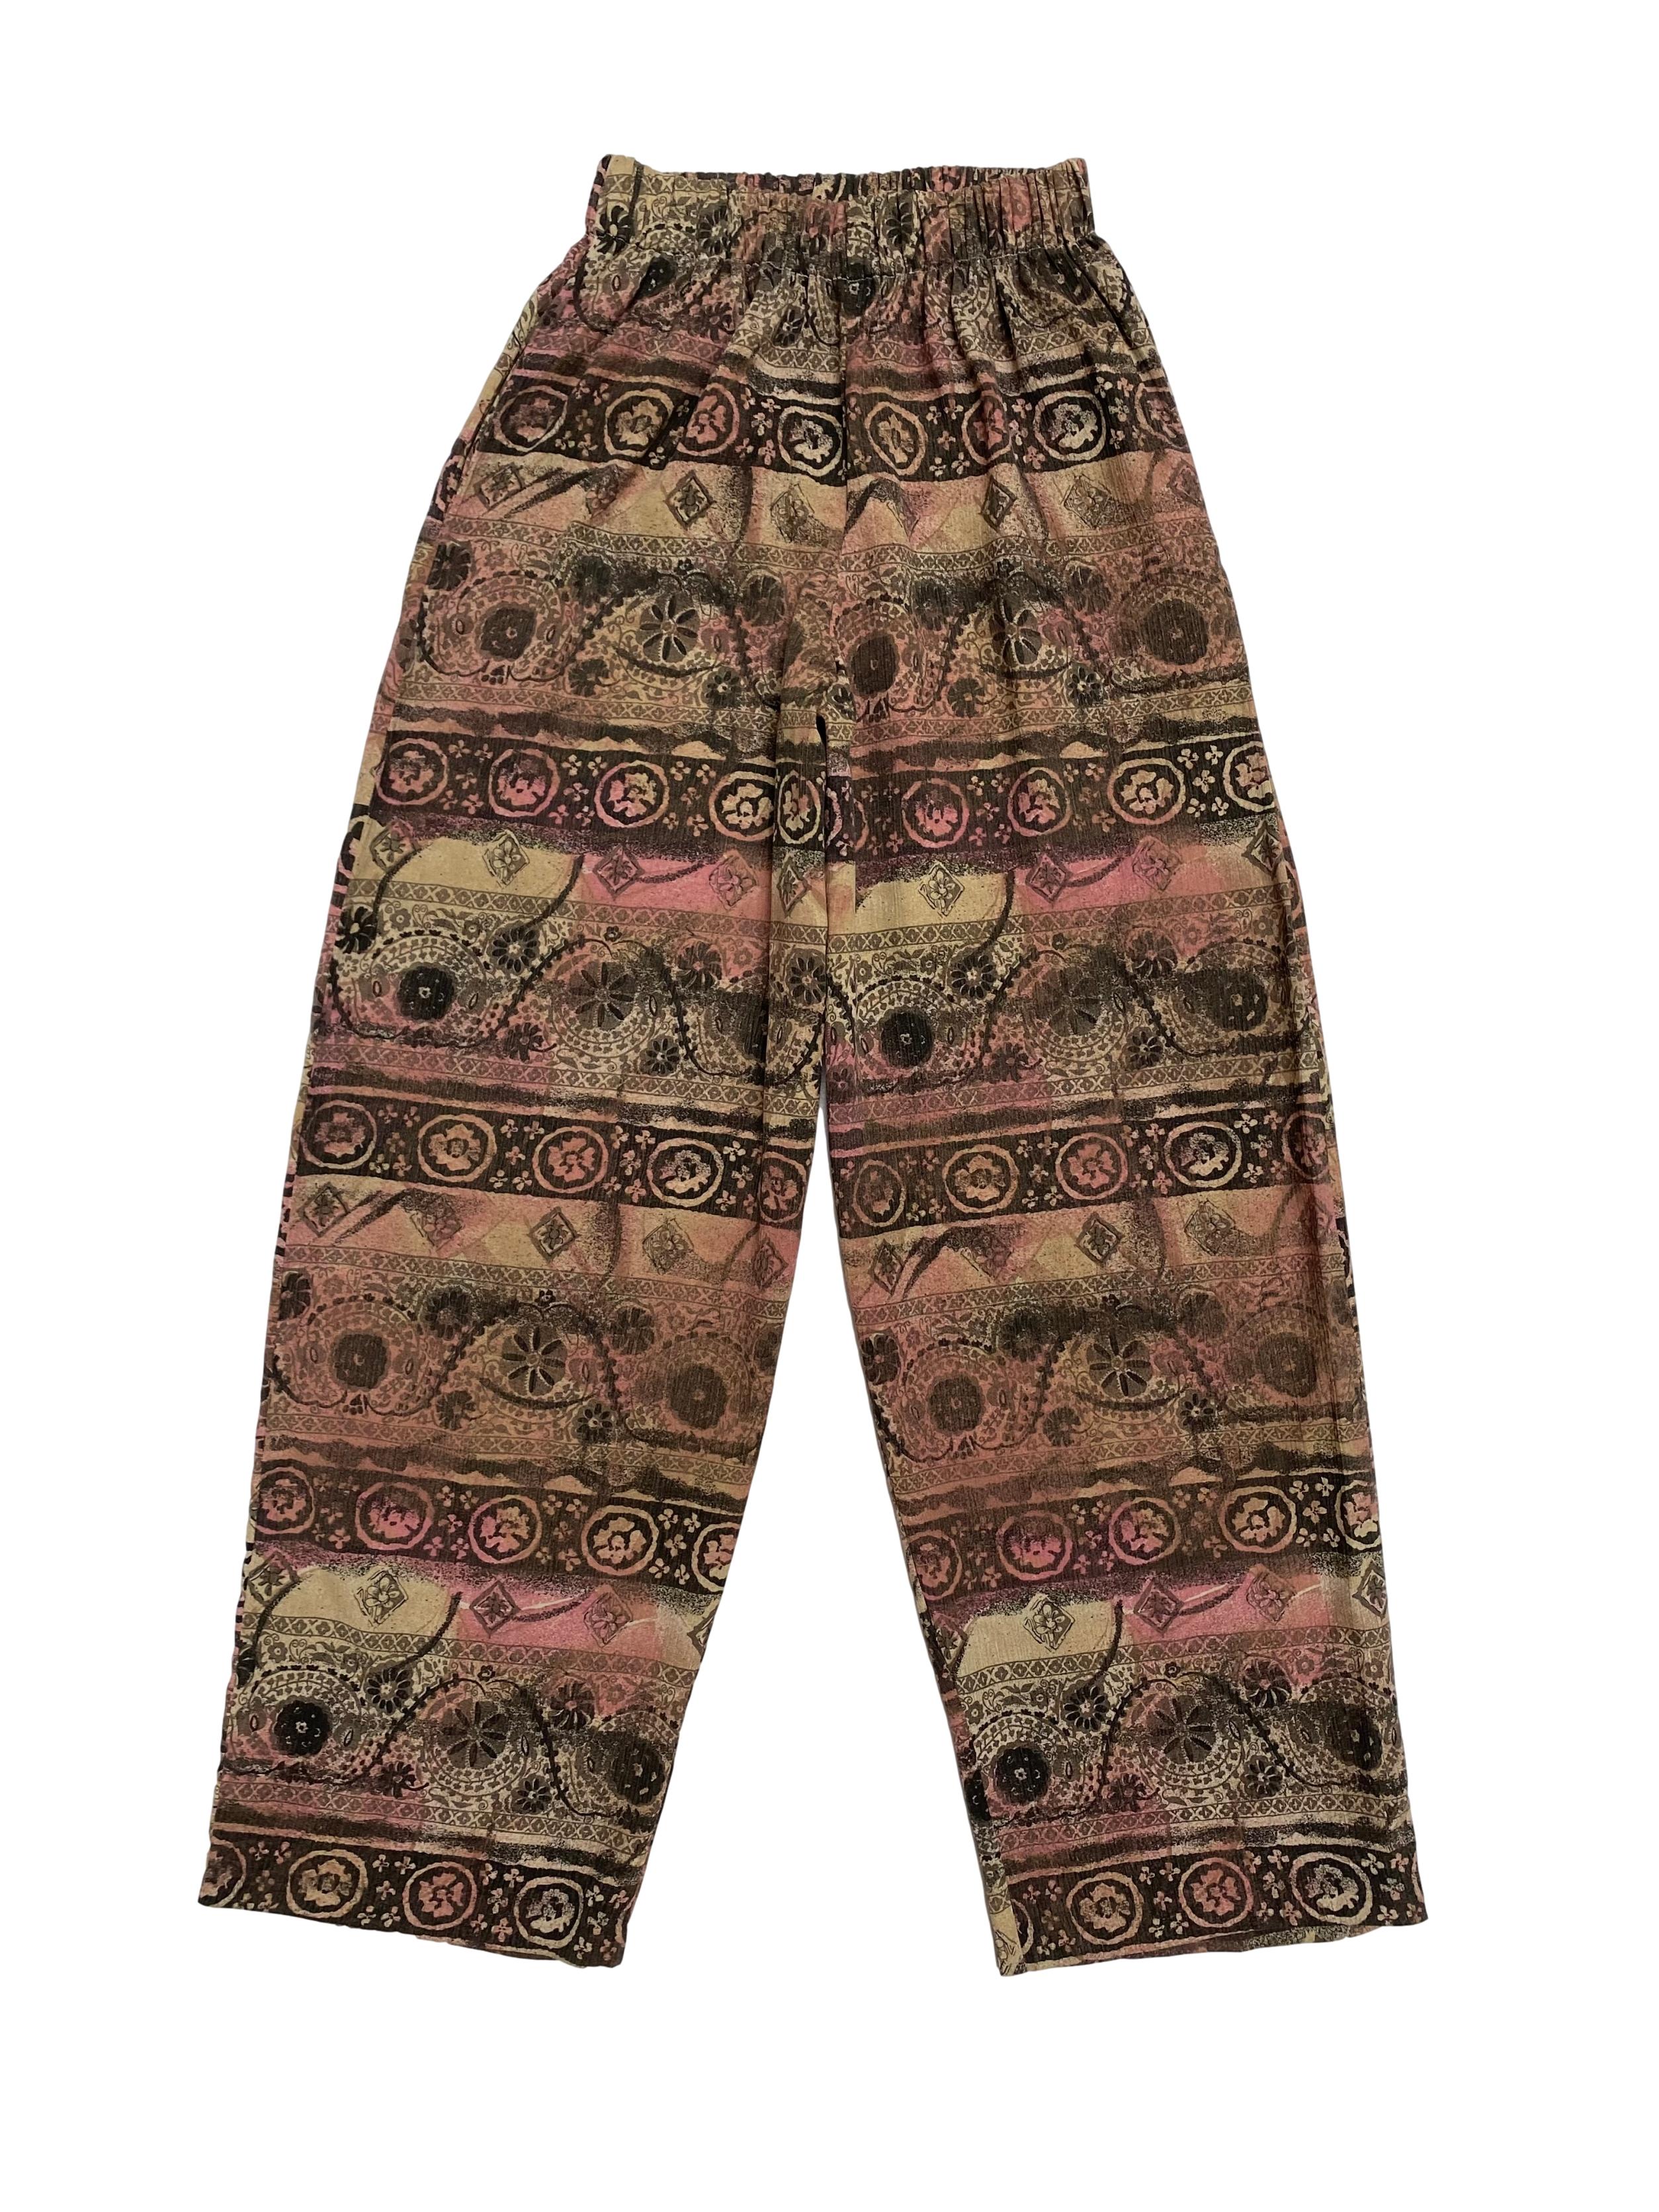 Pantalón vintage tipo hindú con elástico en la cintura y bolsillos laterales, corte recto super fresco. Cintura 62cm (sin estirar)